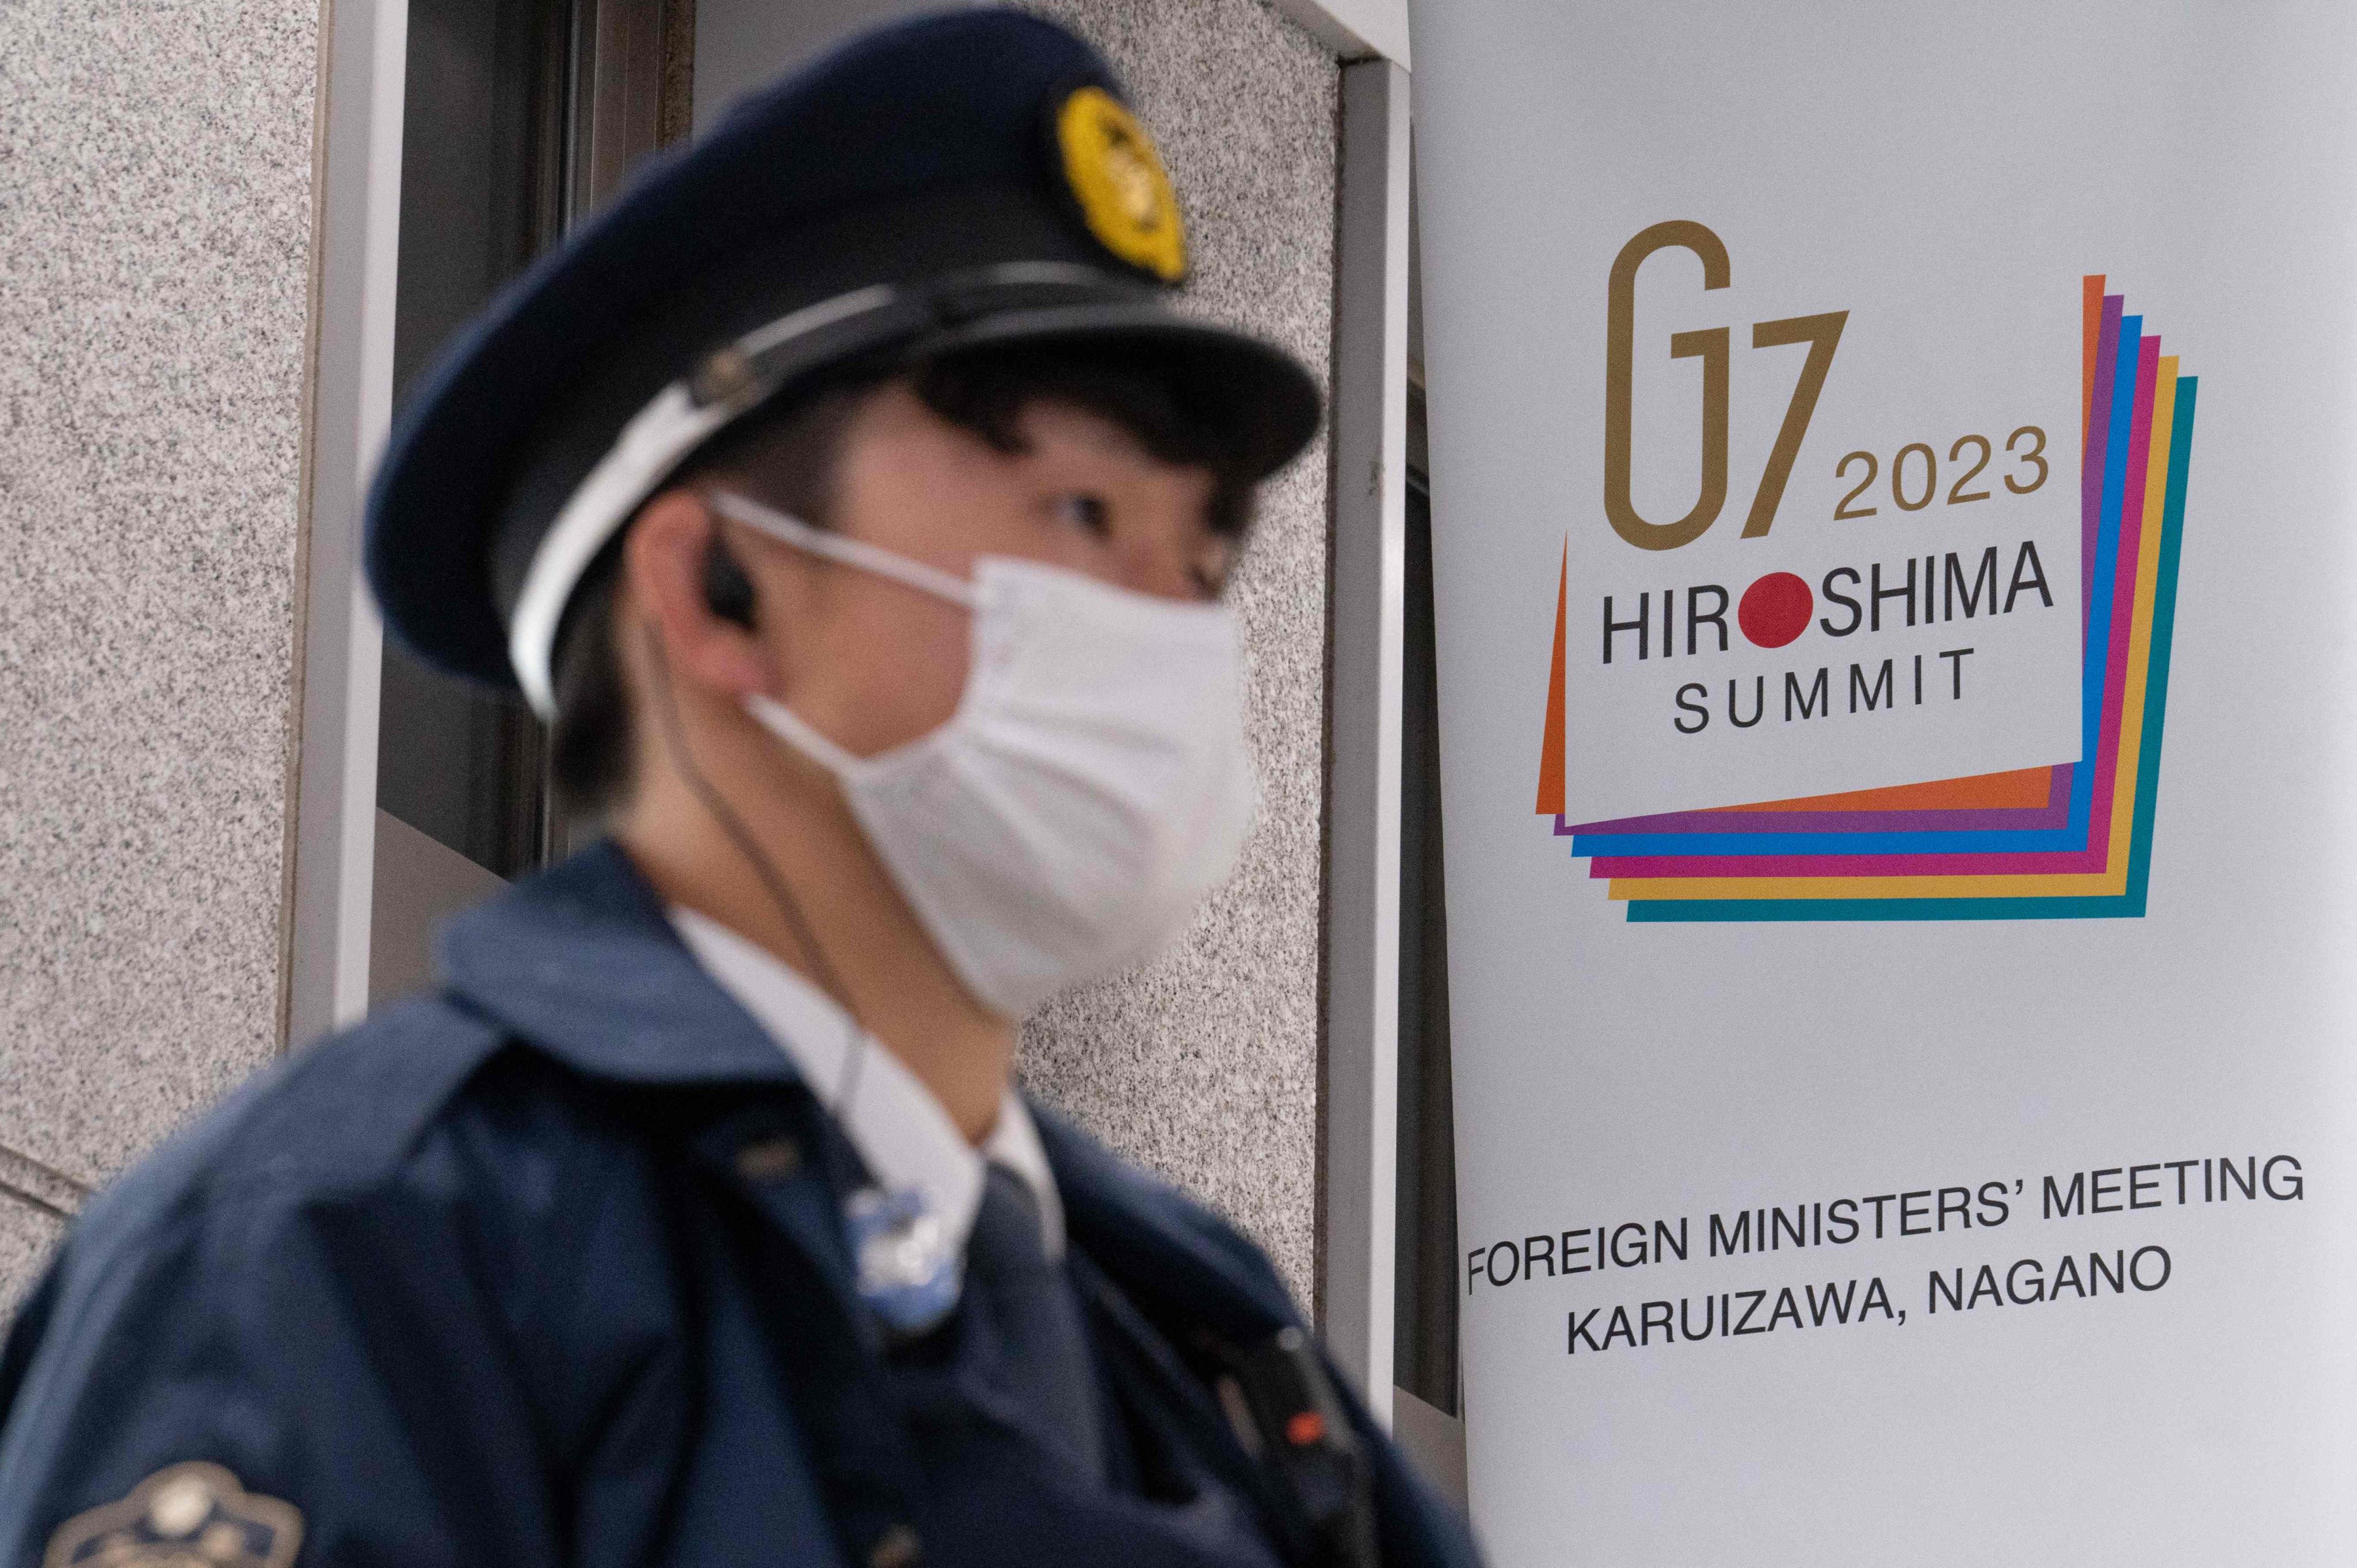 A police officer stands guard next to a G7 banner at Karuizawa station in Karuizawa, Nagano, Japan on Saturday. Photo: AFP